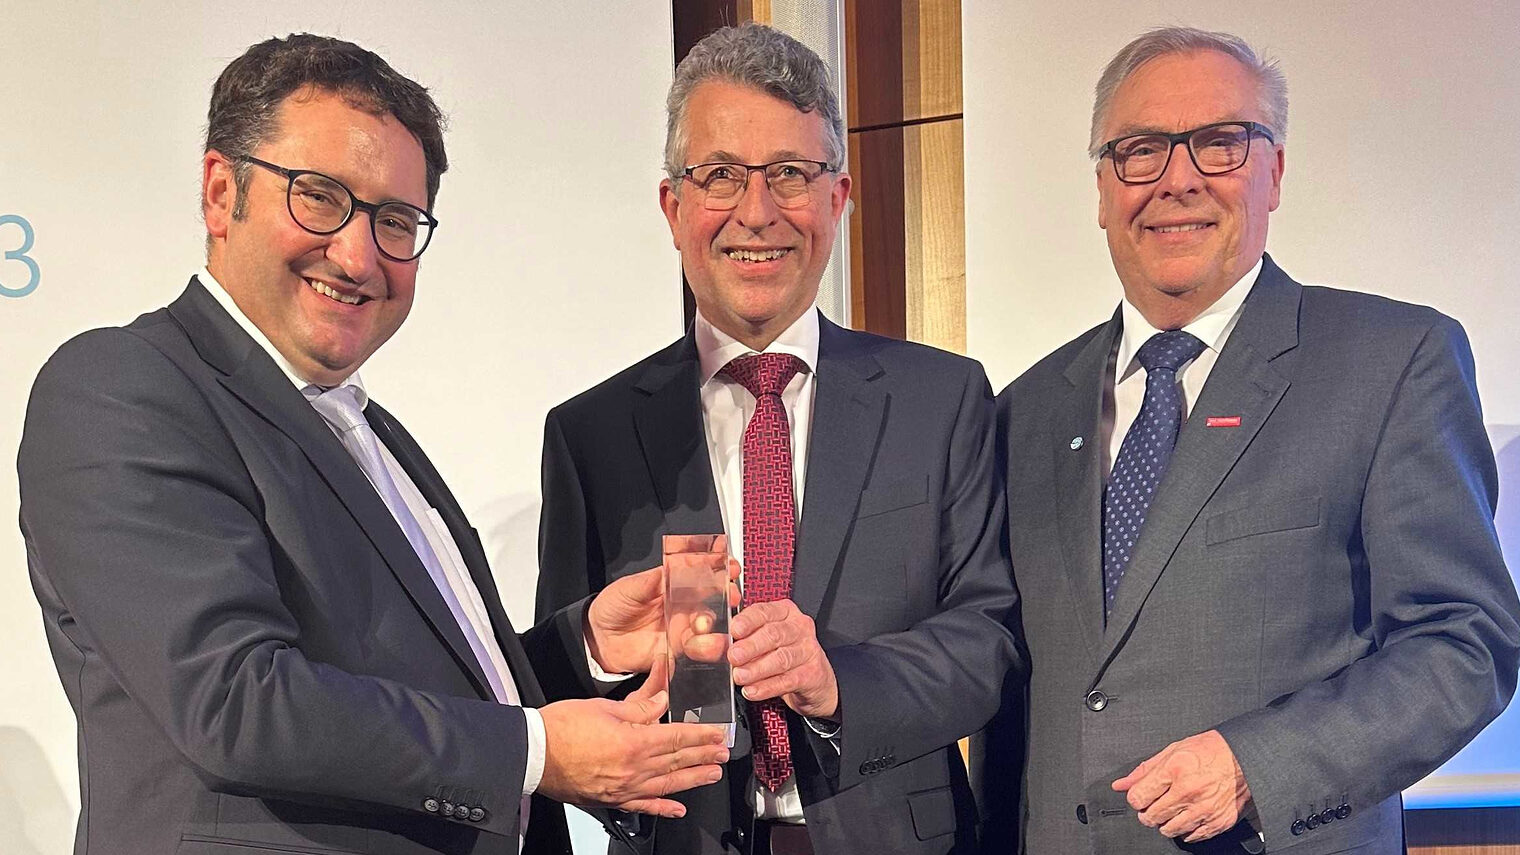 Verleihung des Exportpreises in München: Preisträger Anton Fries (Mitte) mit HWK-Präsident Hans-Peter Rauch (rechts) und Wirtschaftsstaatssekretär Tobias Gotthardt.